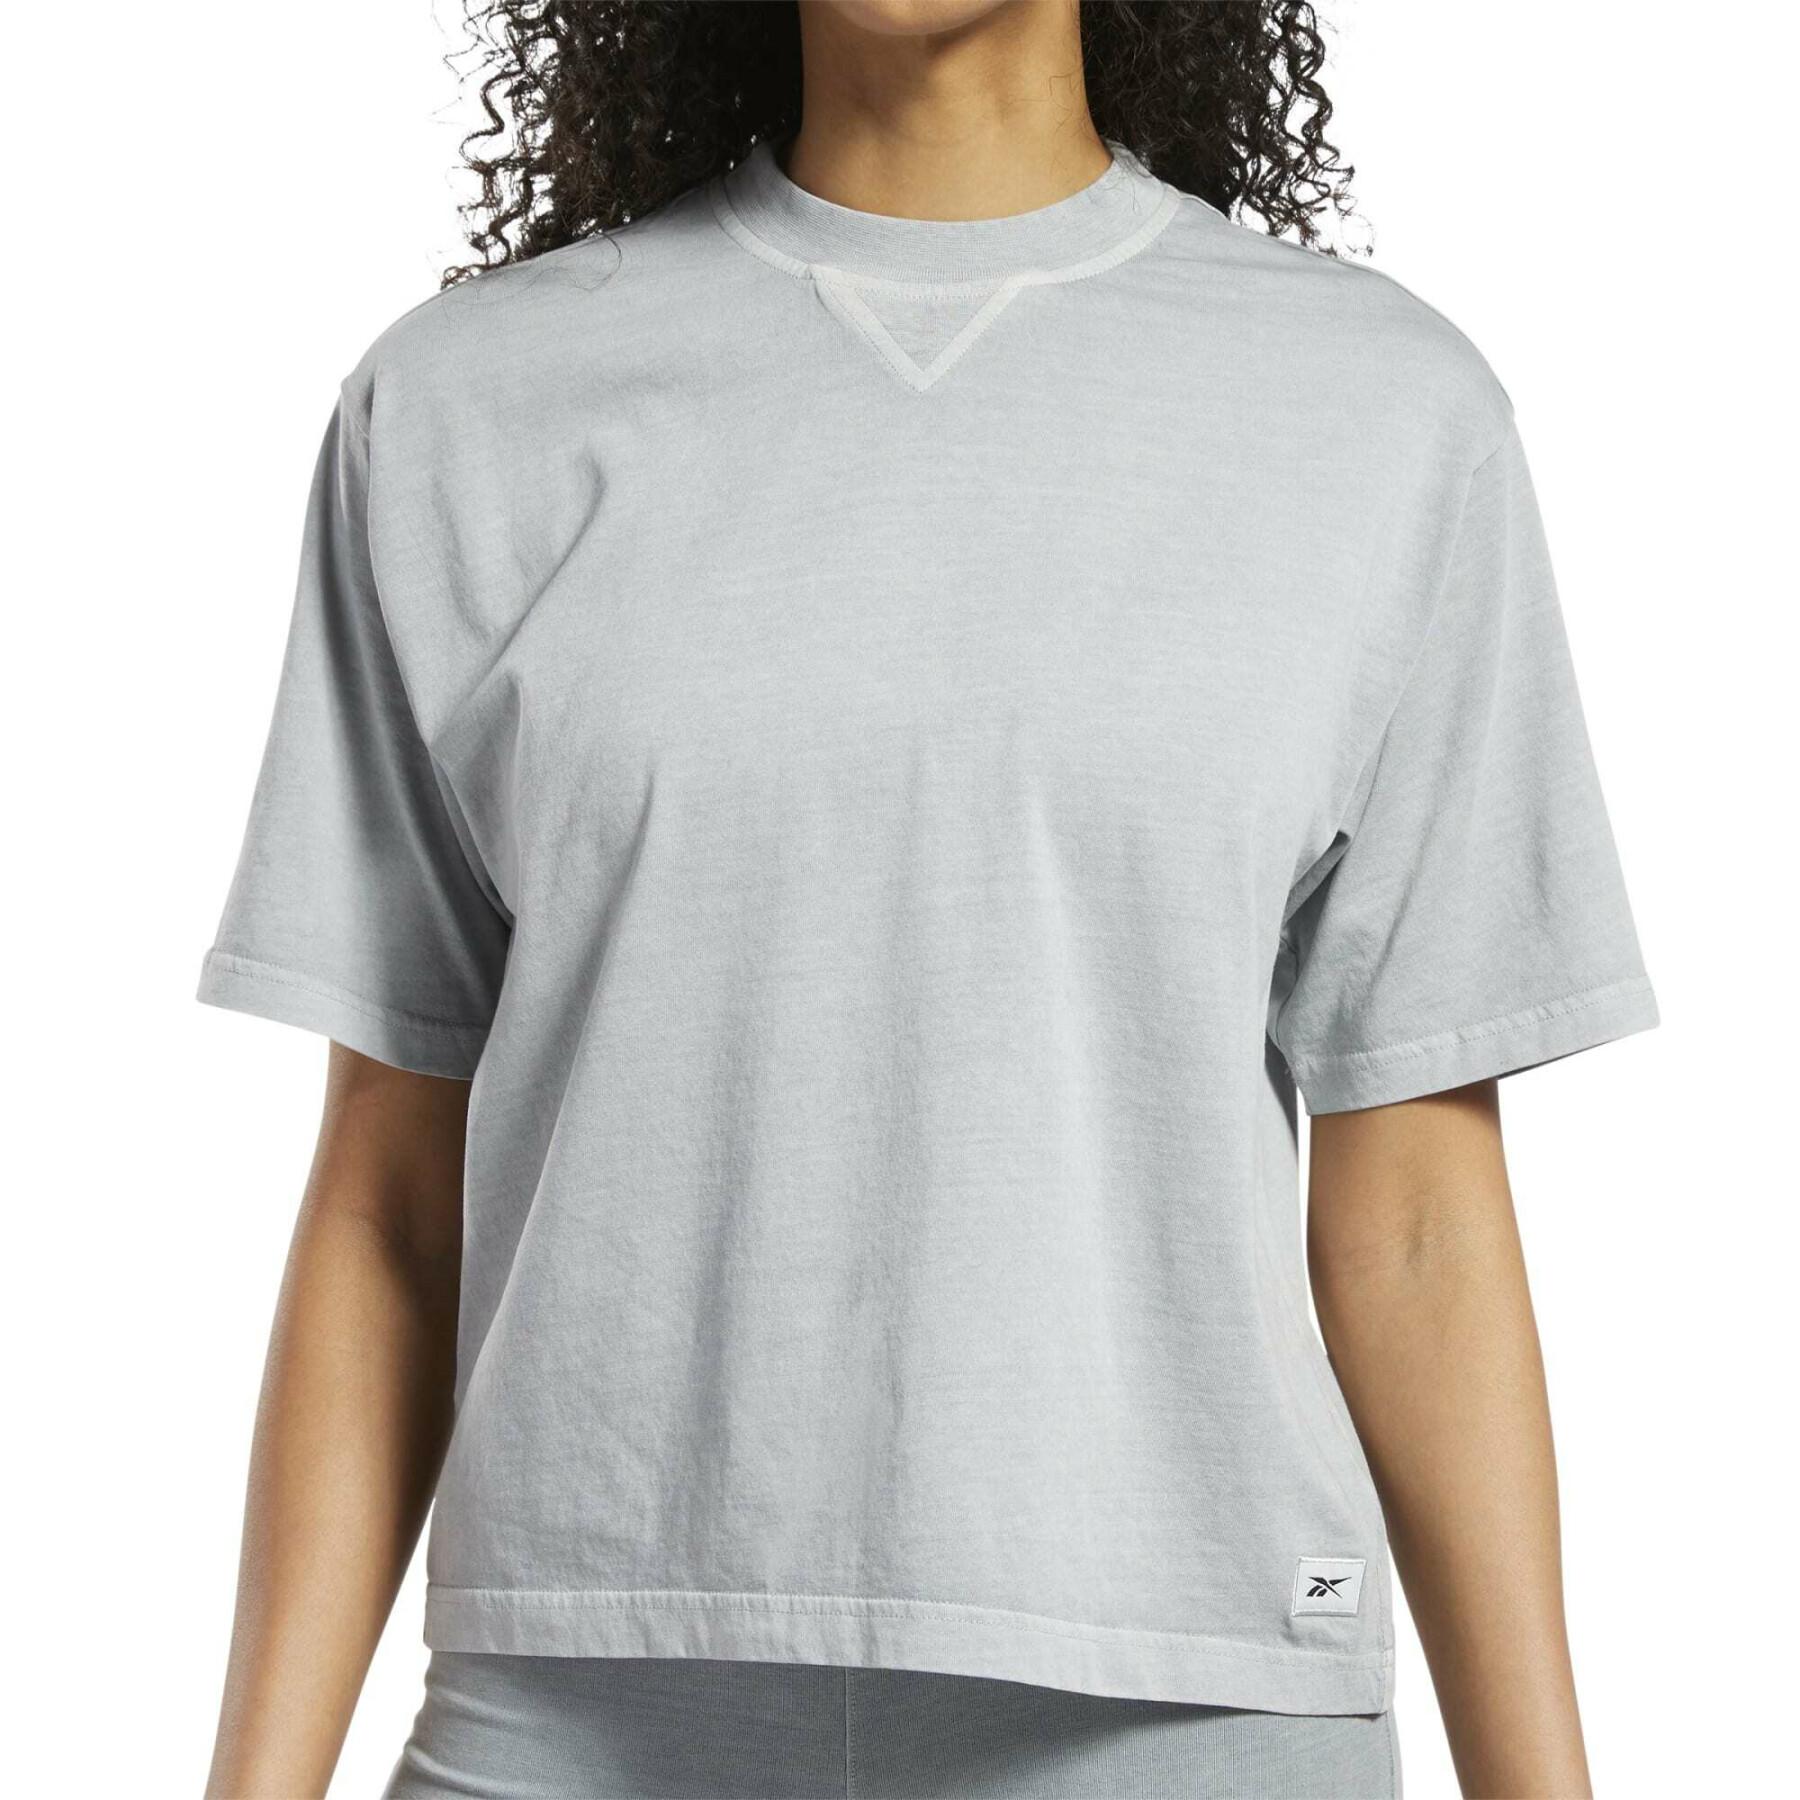 T-Shirt, gerader Schnitt, naturgefärbt, Damen Reebok Classics